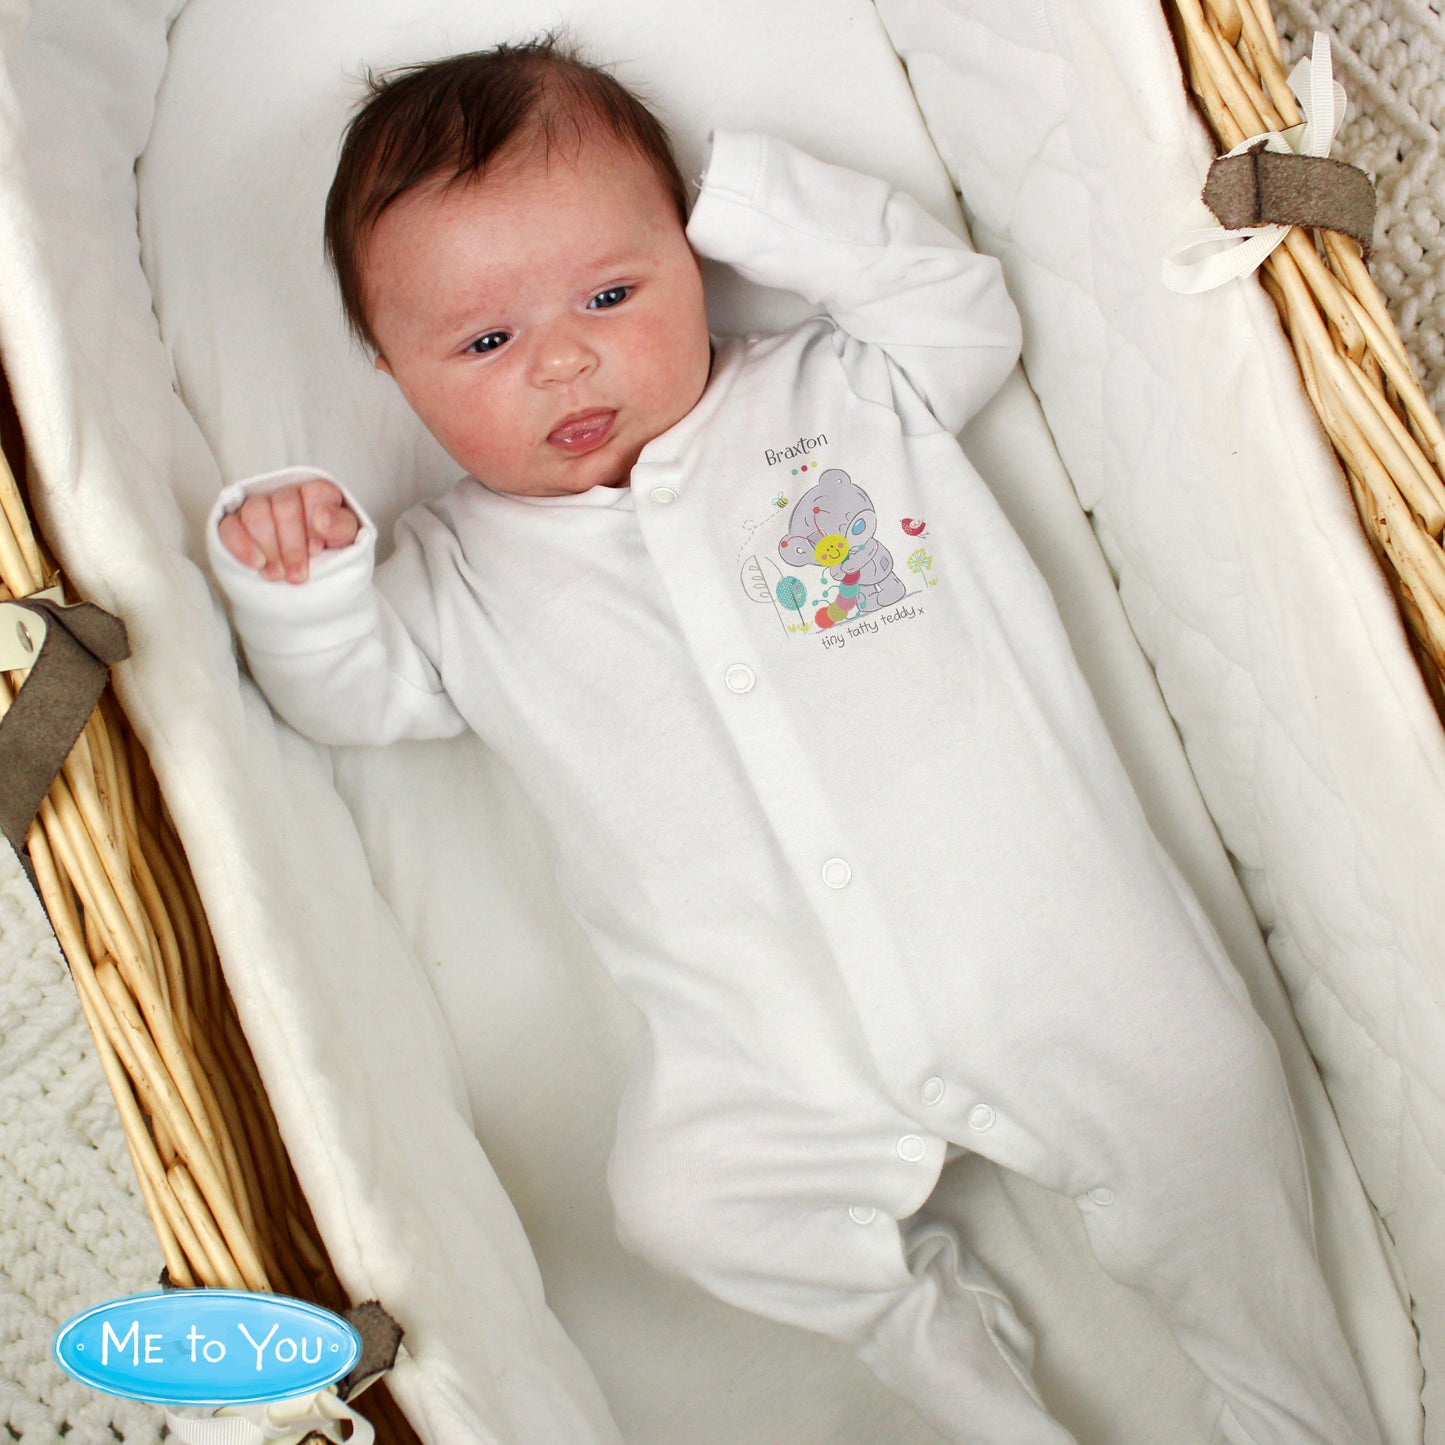 Personalised Babygrow 0-3 Months - Tatty Teddy “Cuddle” - Violet Belle Gifts - Personalised Babygrow 0-3 Months - Tatty Teddy Cuddle